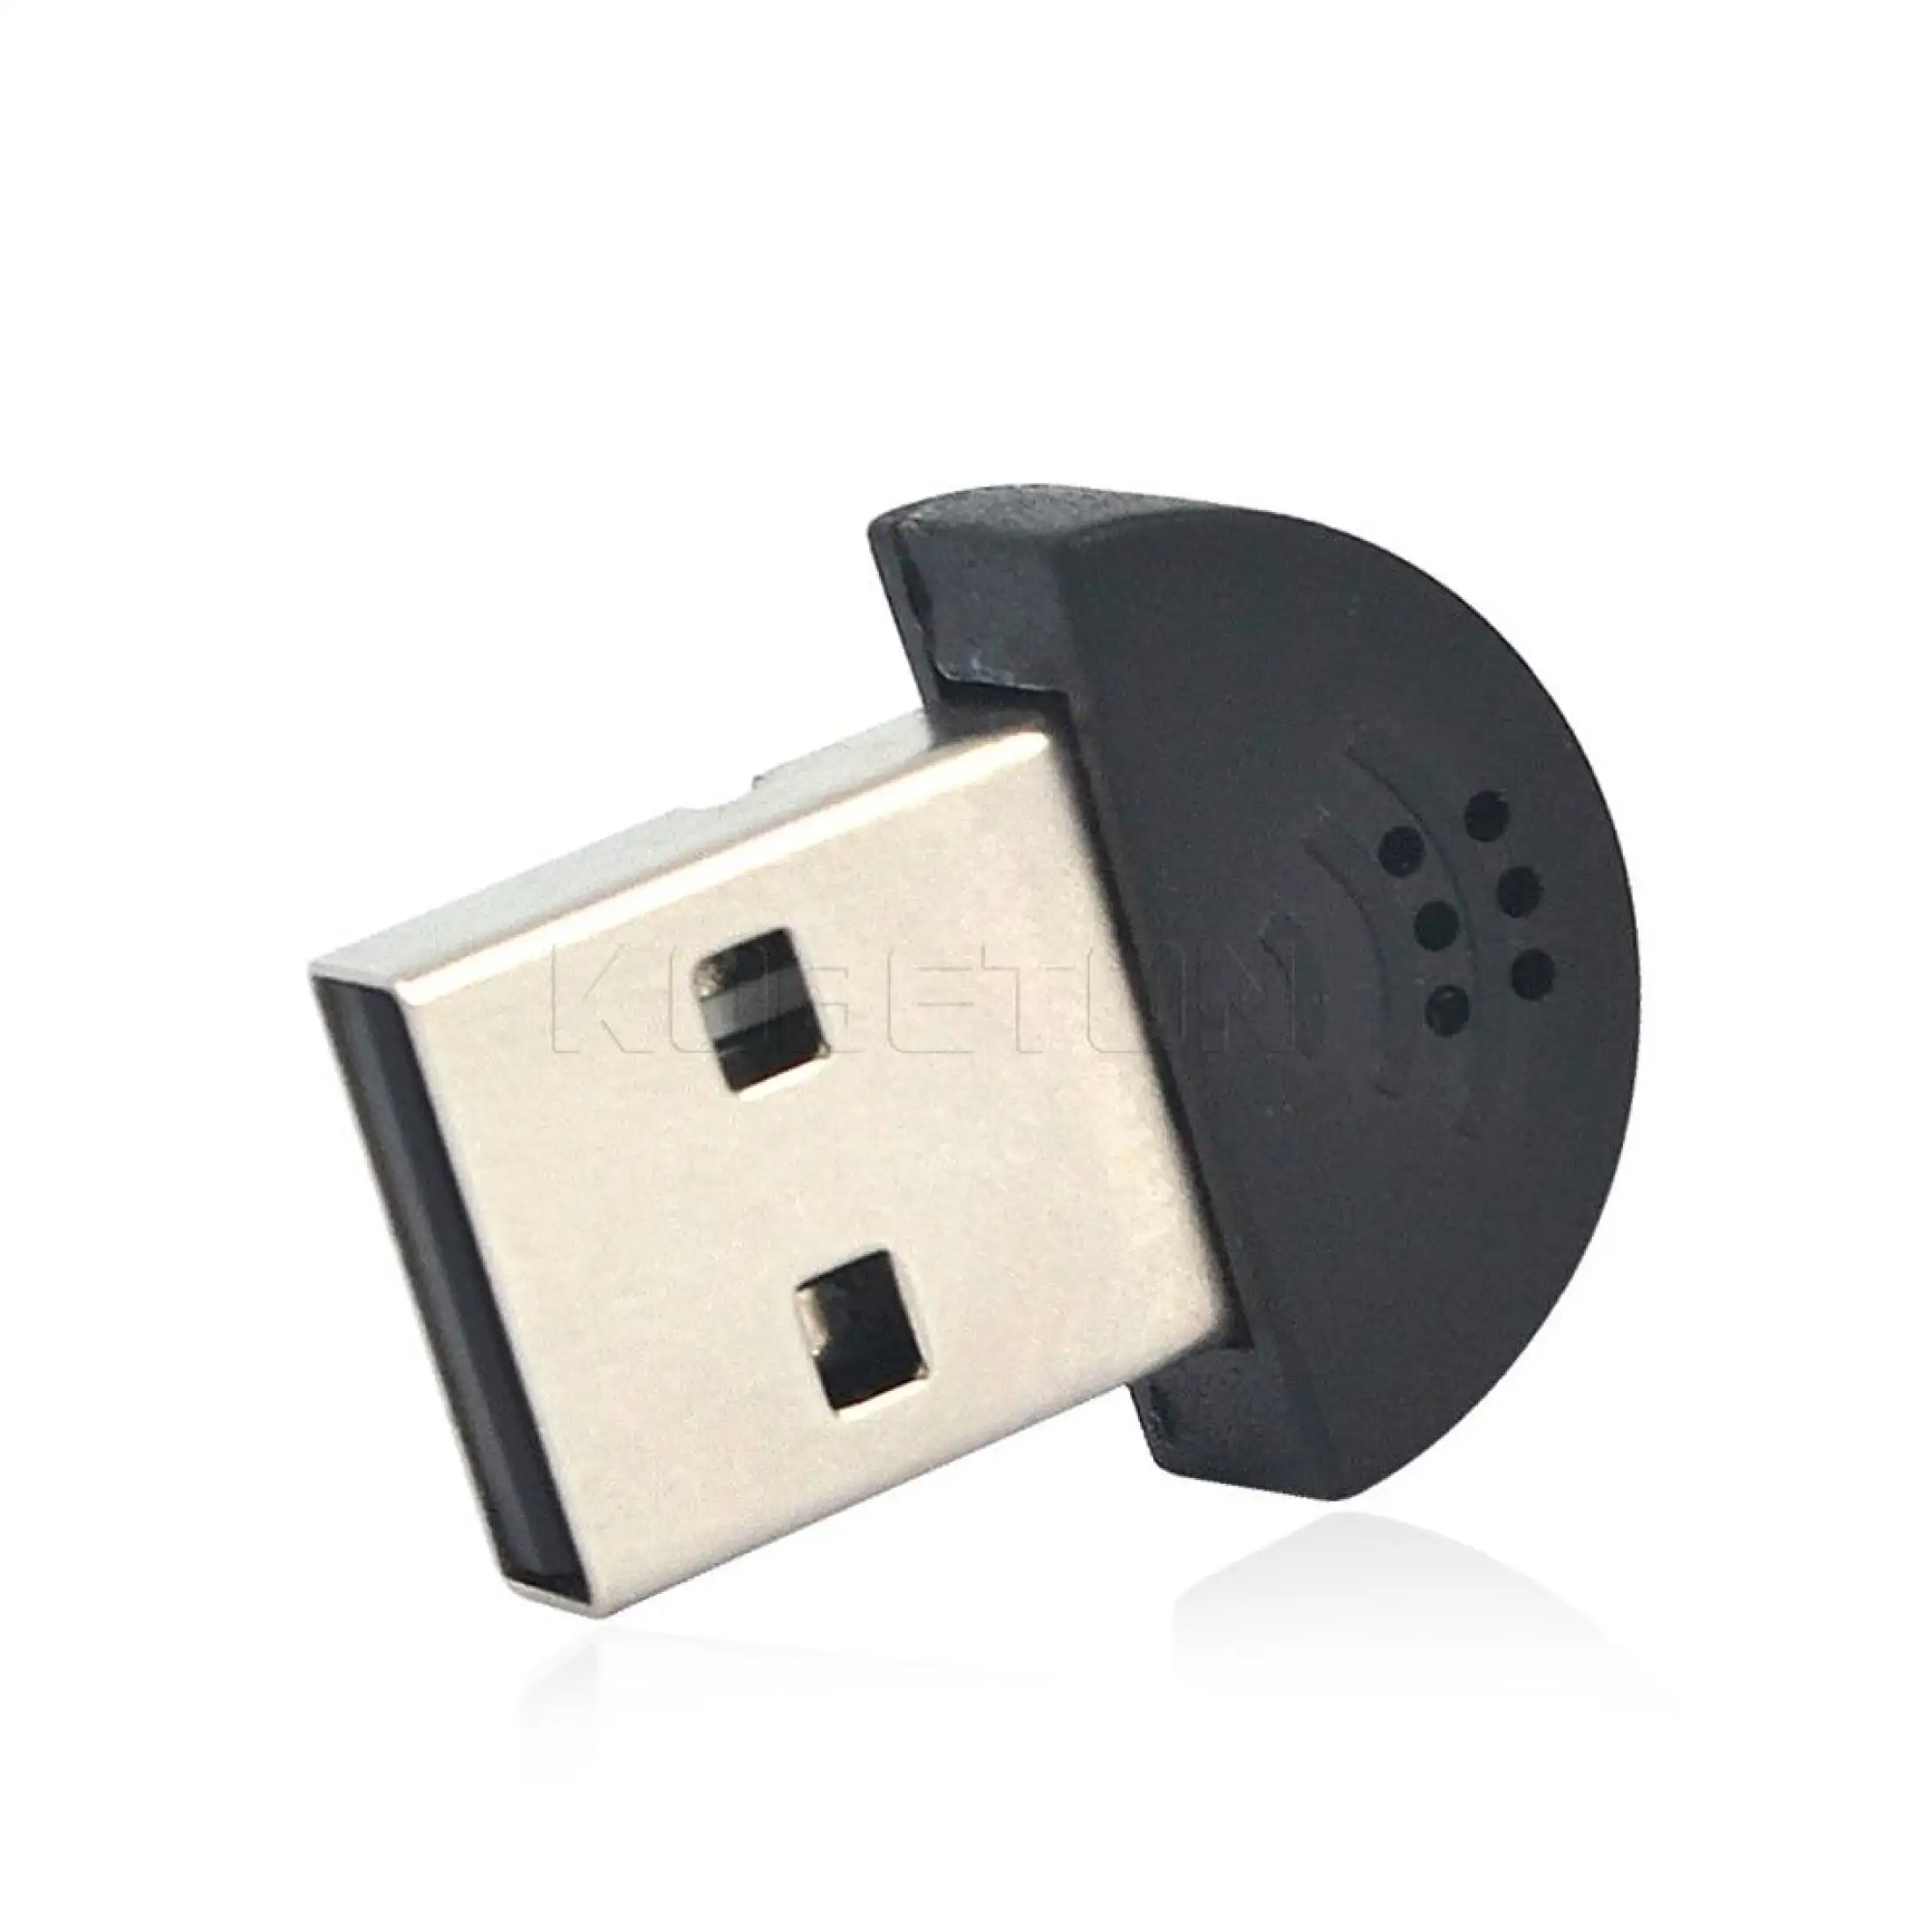 KEBETEME Micro USB 2.0 Siêu Nhỏ Micrô Phát Biểu Phòng Thu Di Động Bộ Chuyển Đổi Âm Thanh Miễn Phí Cho MSN Máy Tính Xách Tay Máy Ghi Âm Đa Kênh Trực Tuyến Bài Giảng